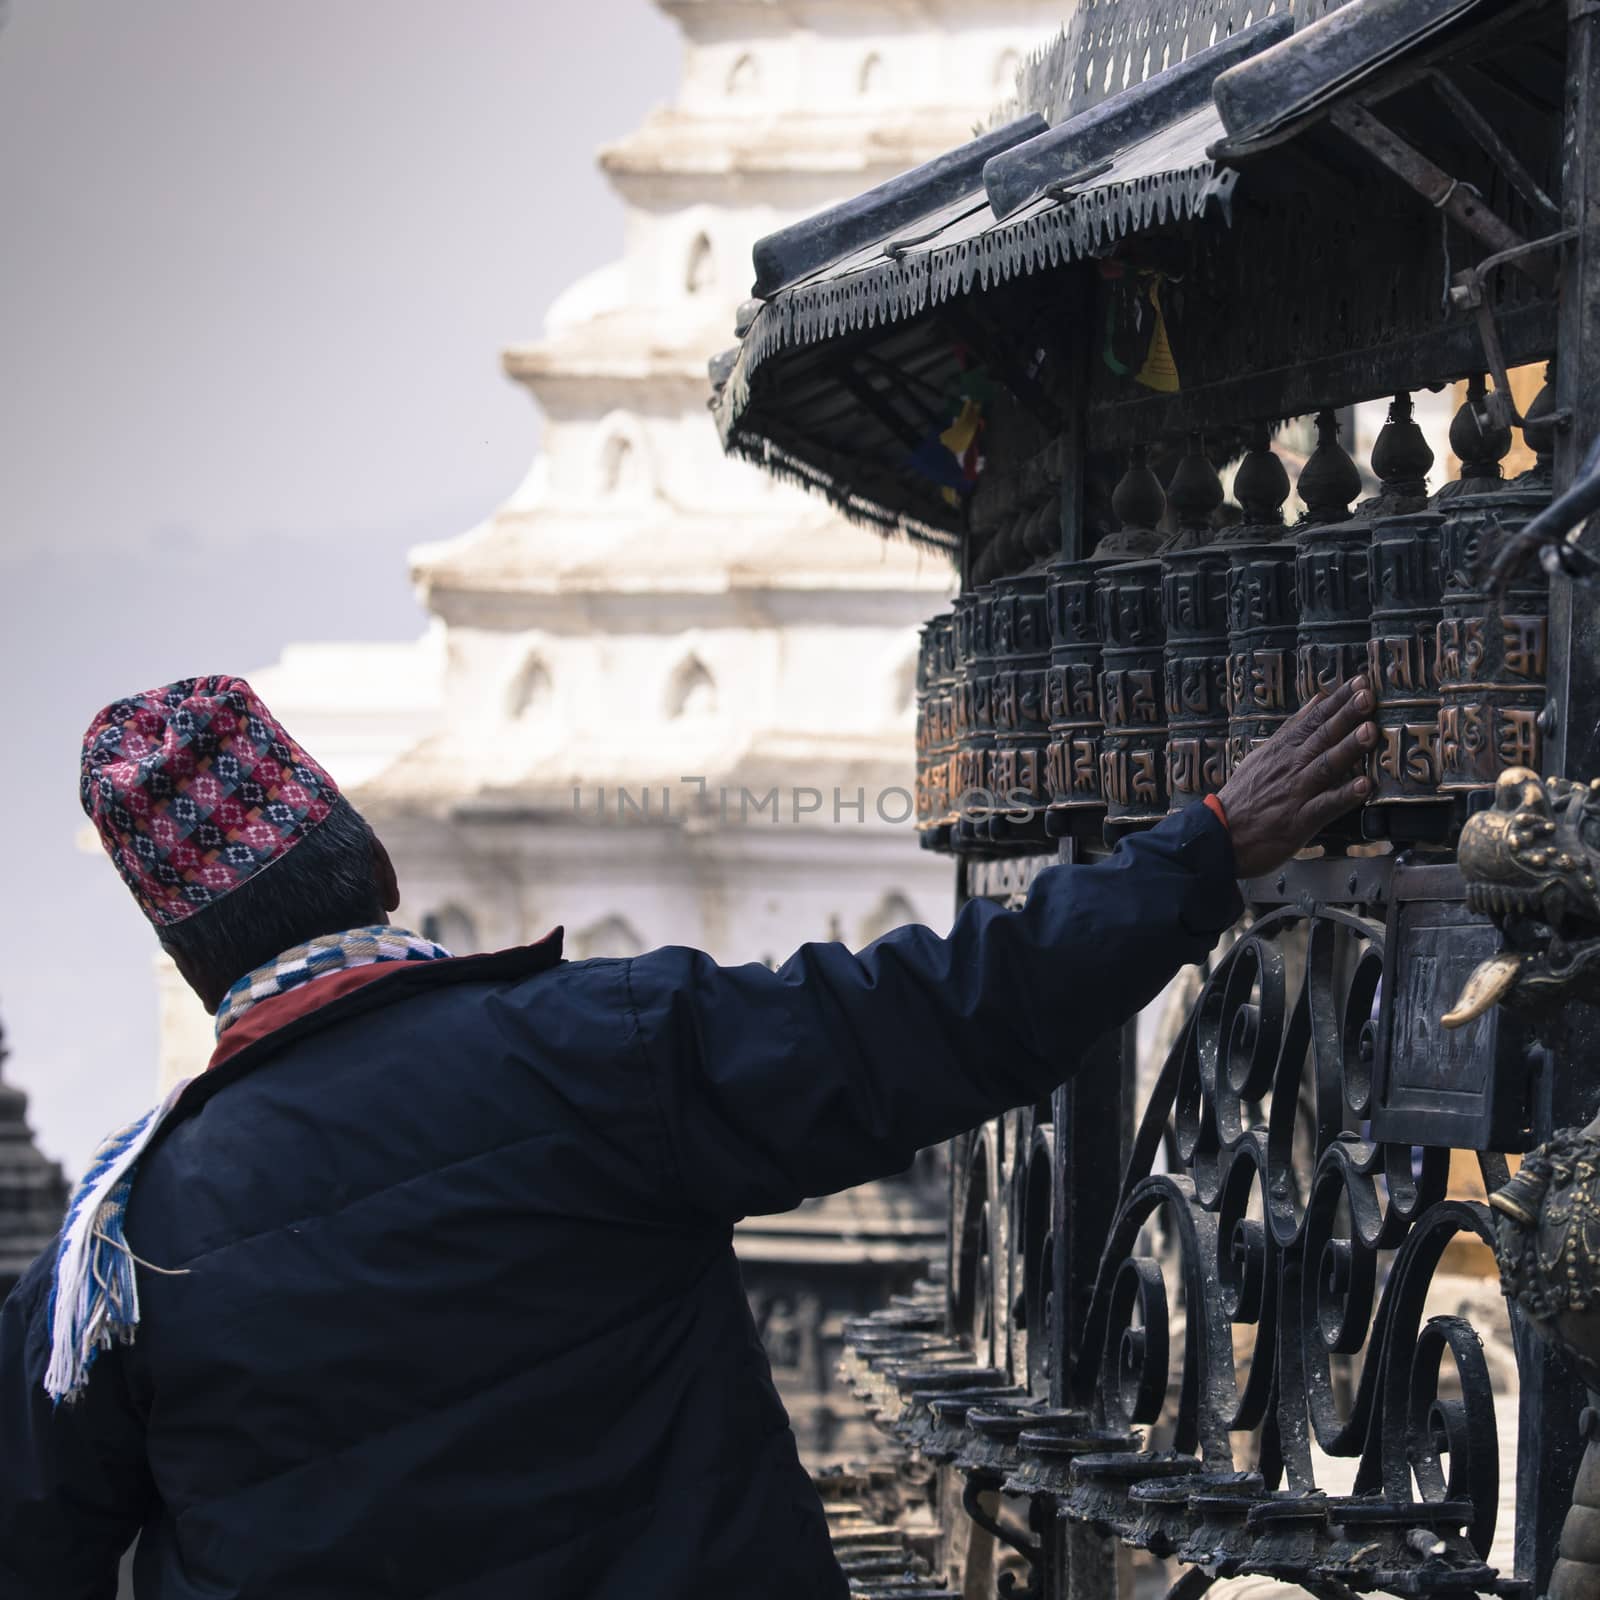 Prayer Wheels at Swayambhu, Kathmandu, Nepal by mariusz_prusaczyk